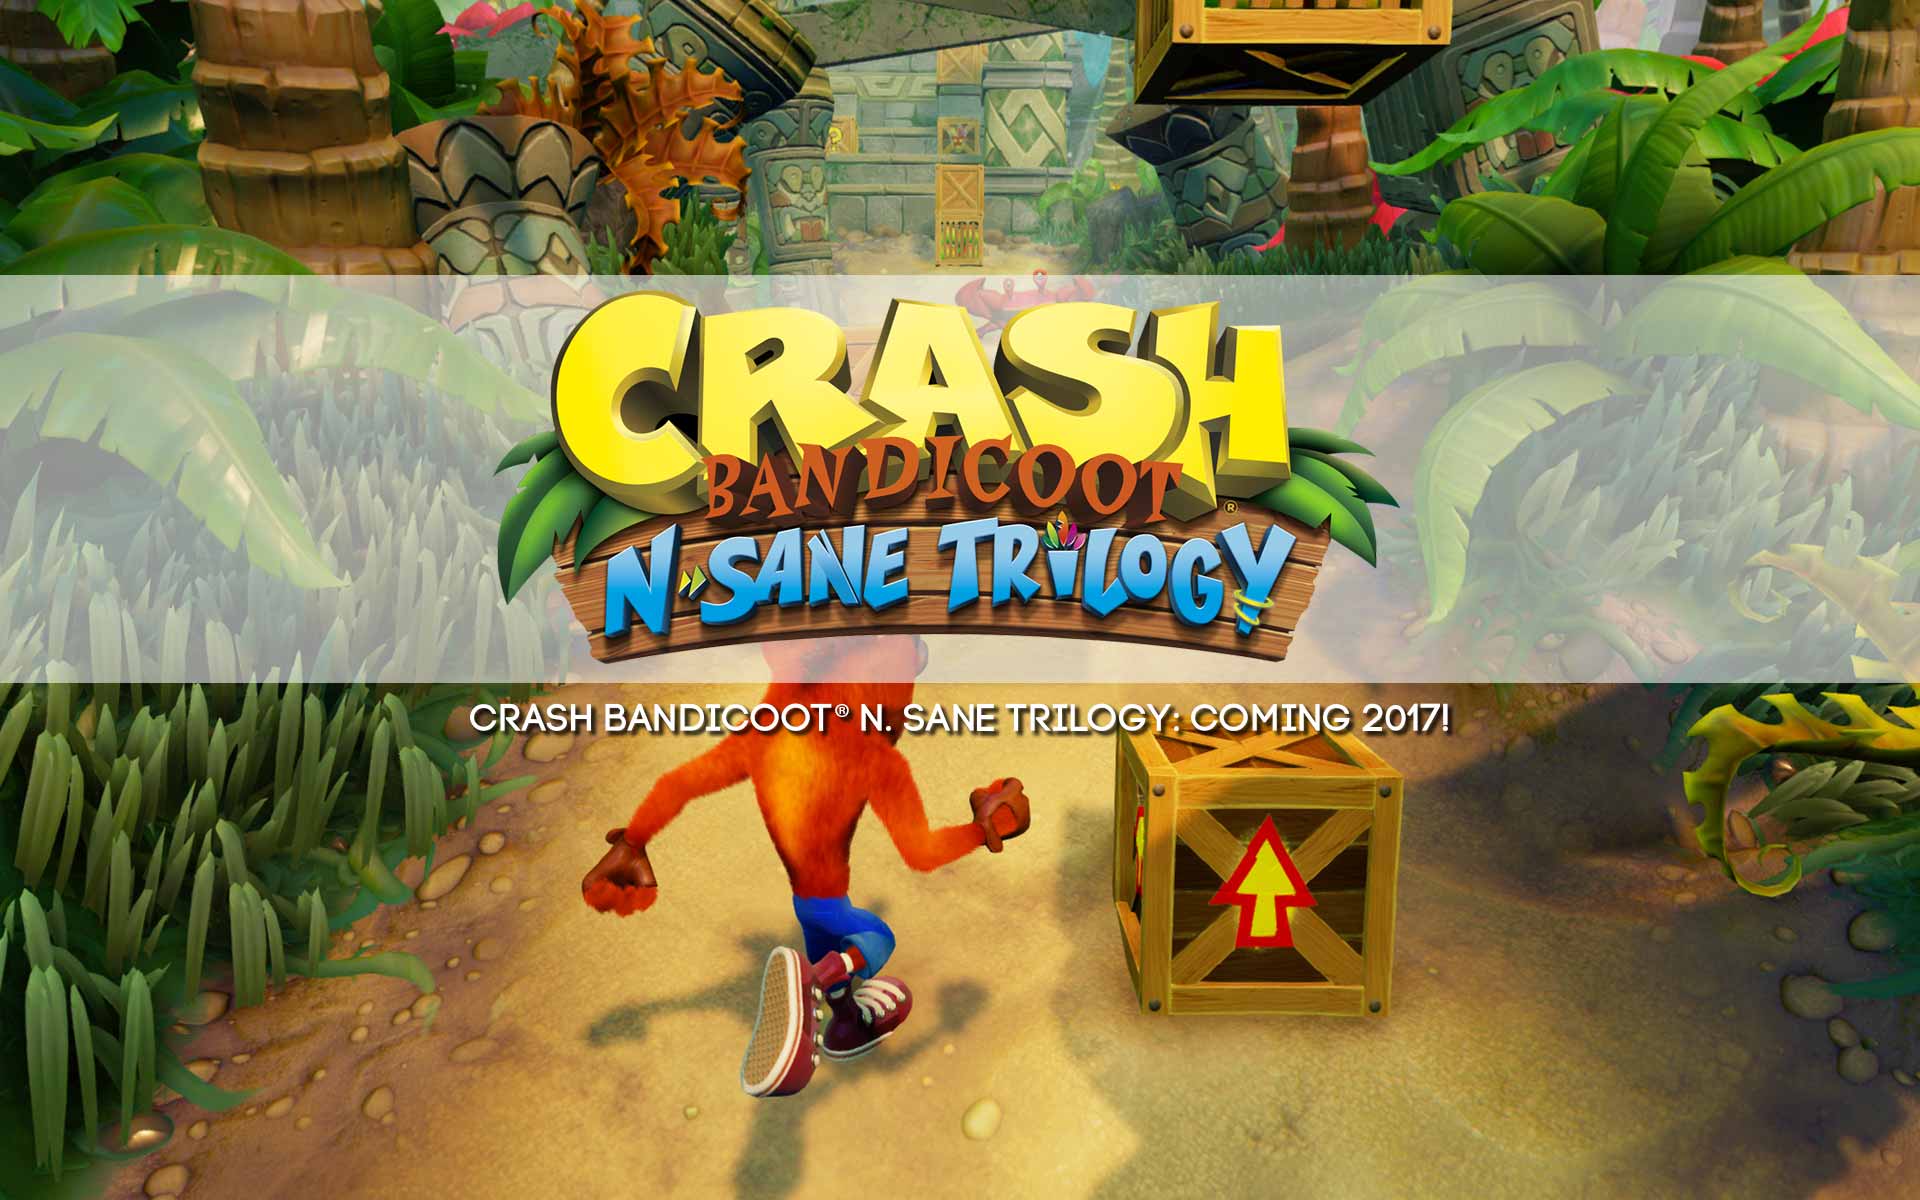 Crash Bandicoot® N. Sane Trilogy: Coming 2017!